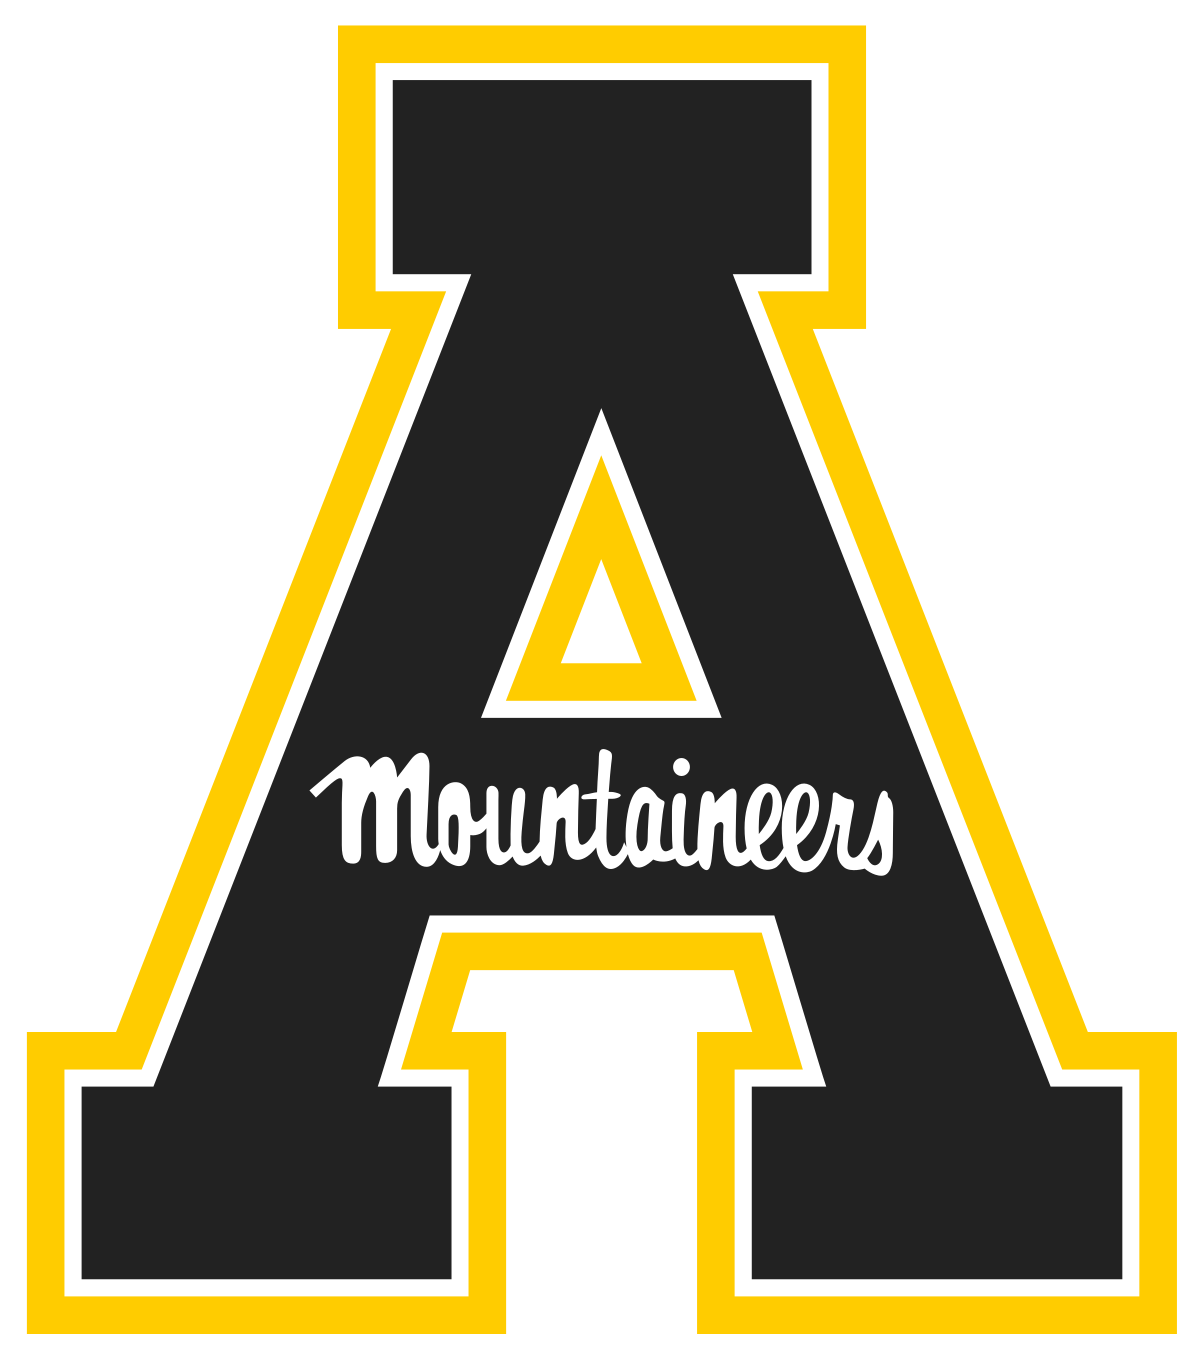 appalachian-state-university-logo-2-1432173965.png